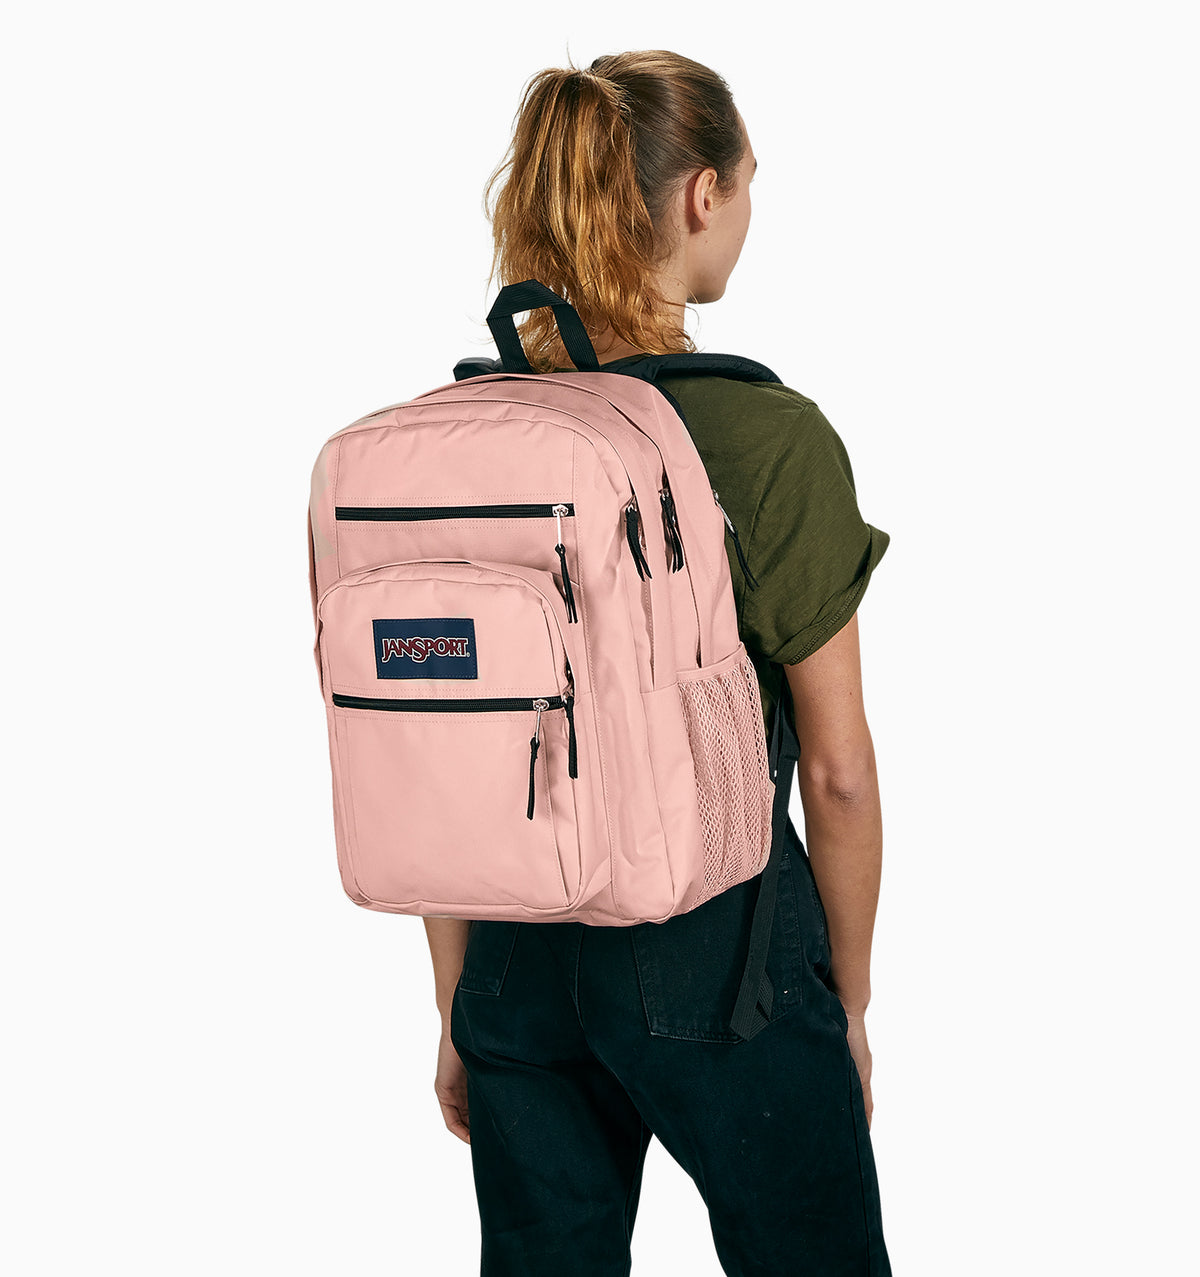 JanSport 16" Big Student Laptop Backpack 34L - Misty Rose